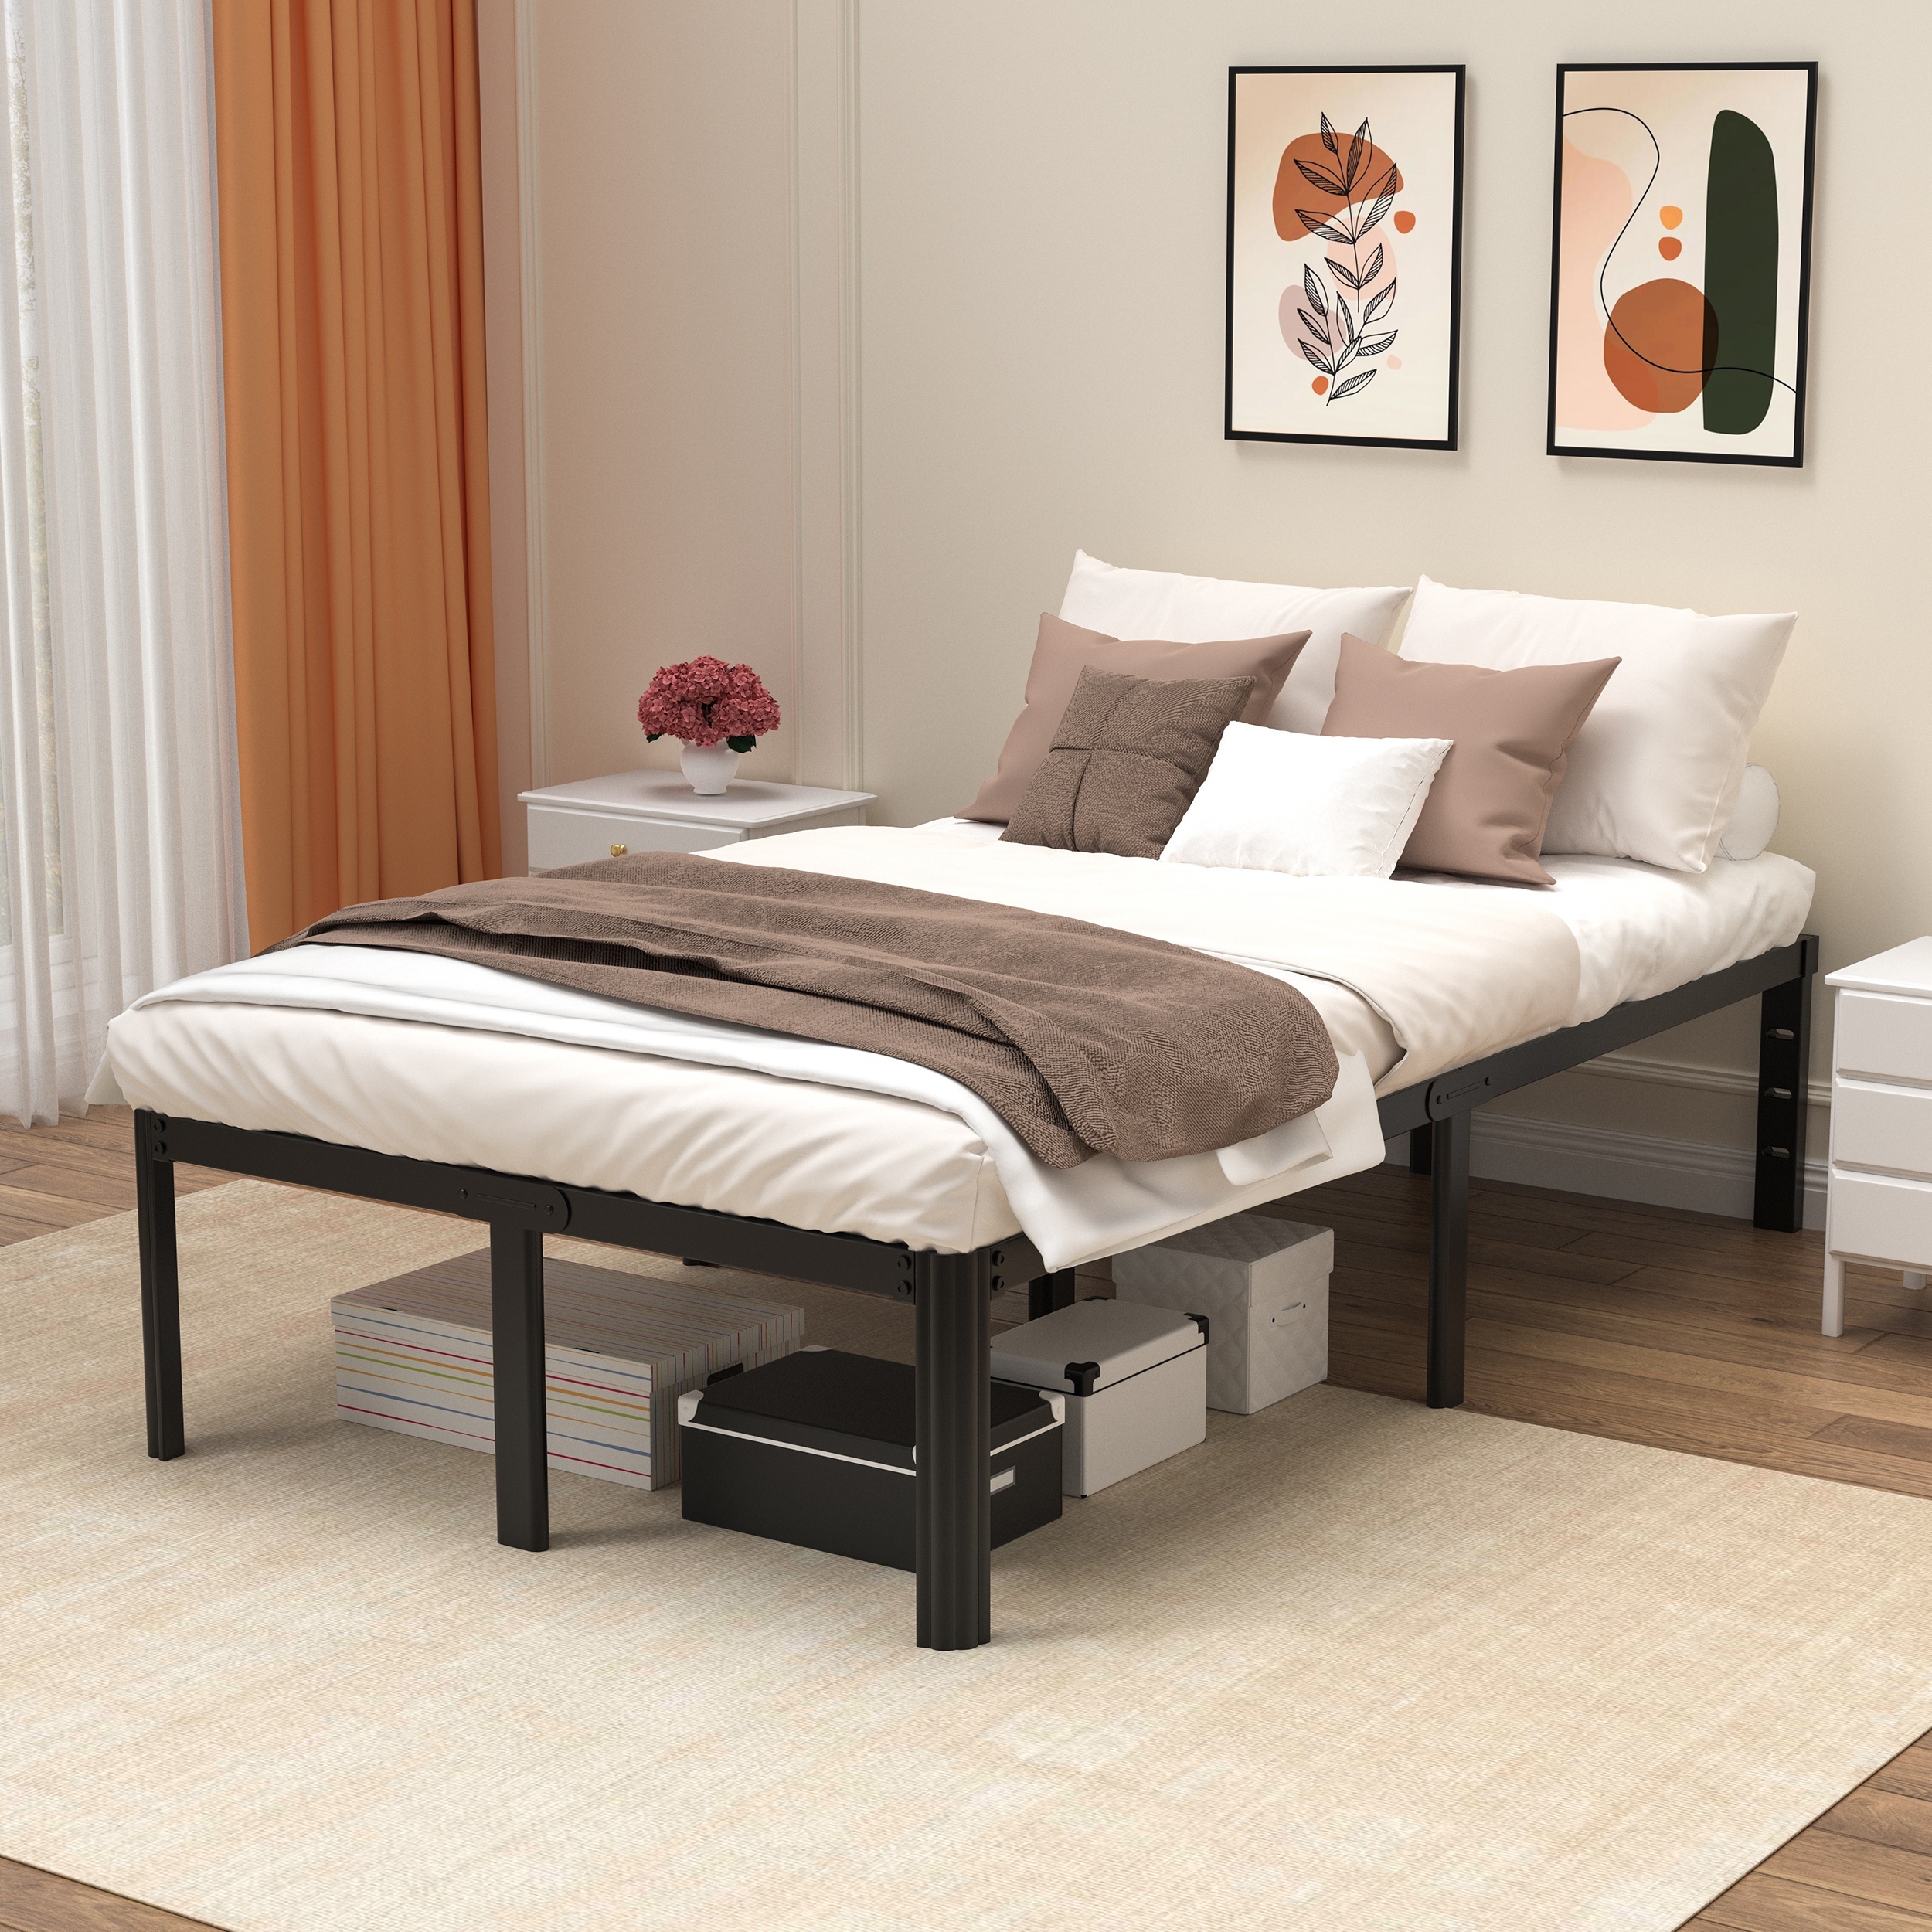 Base de cama de metal tamaño California King de 14 pulgadas, base de cama  resistente para colchón, sin necesidad de somier, color negro